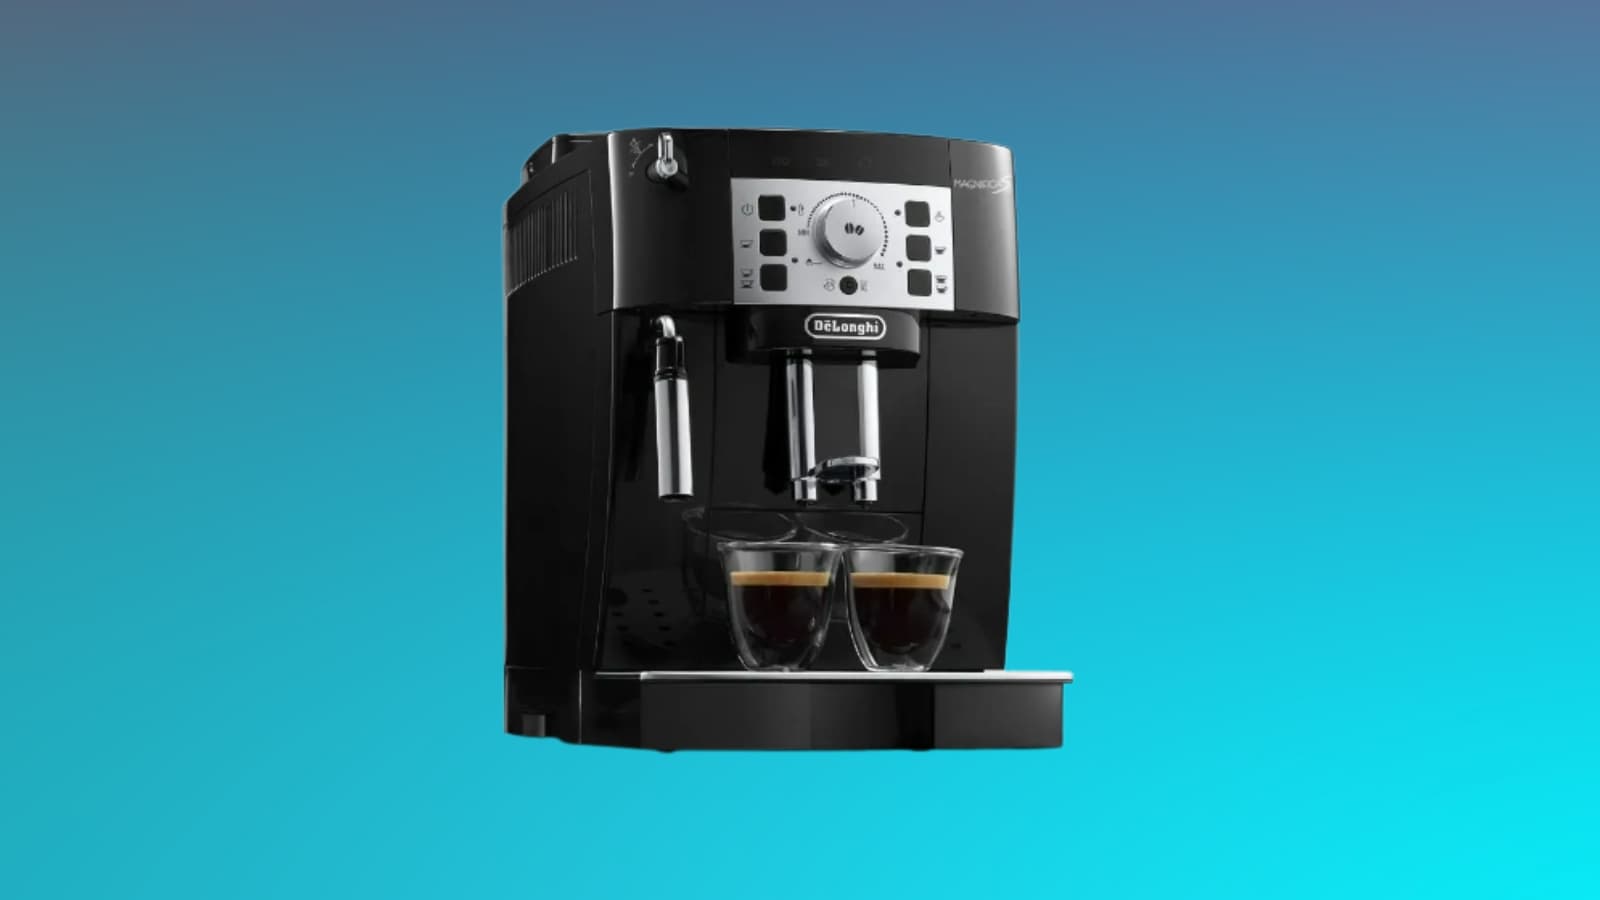 Cette machine à café Delonghi voit son prix se broyer pour ce début d'année  